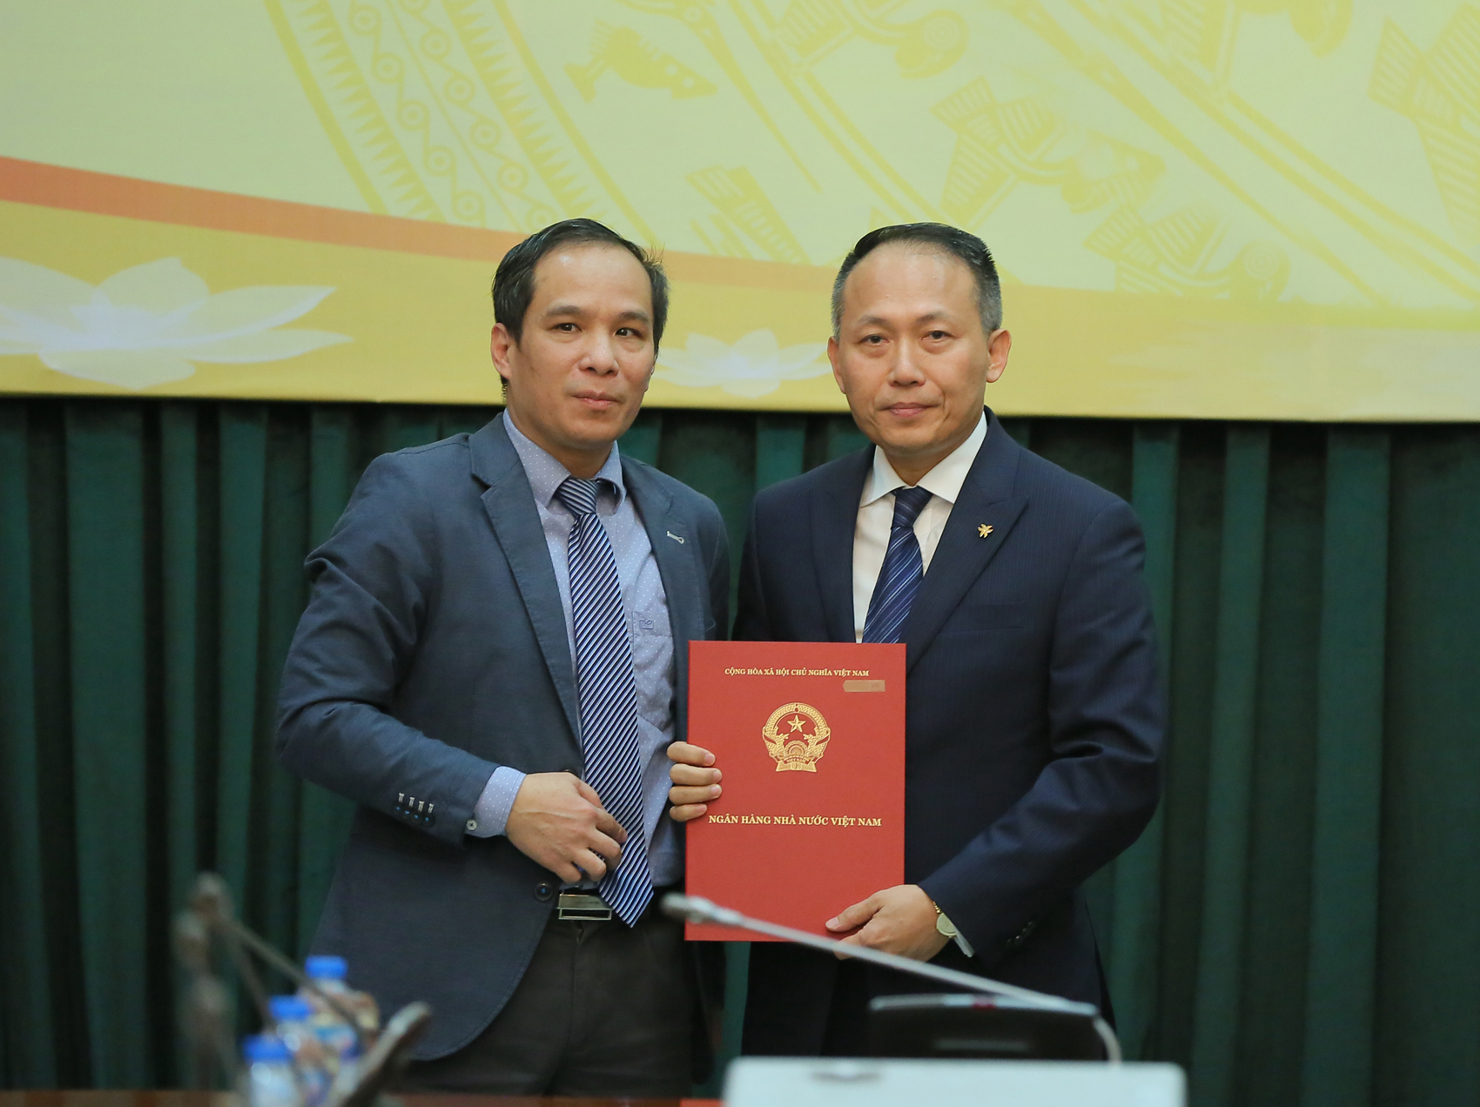  VIB chính thức trở thành ngân hàng thương mại cổ phần đầu tư nhân tiên tại Việt Nam.